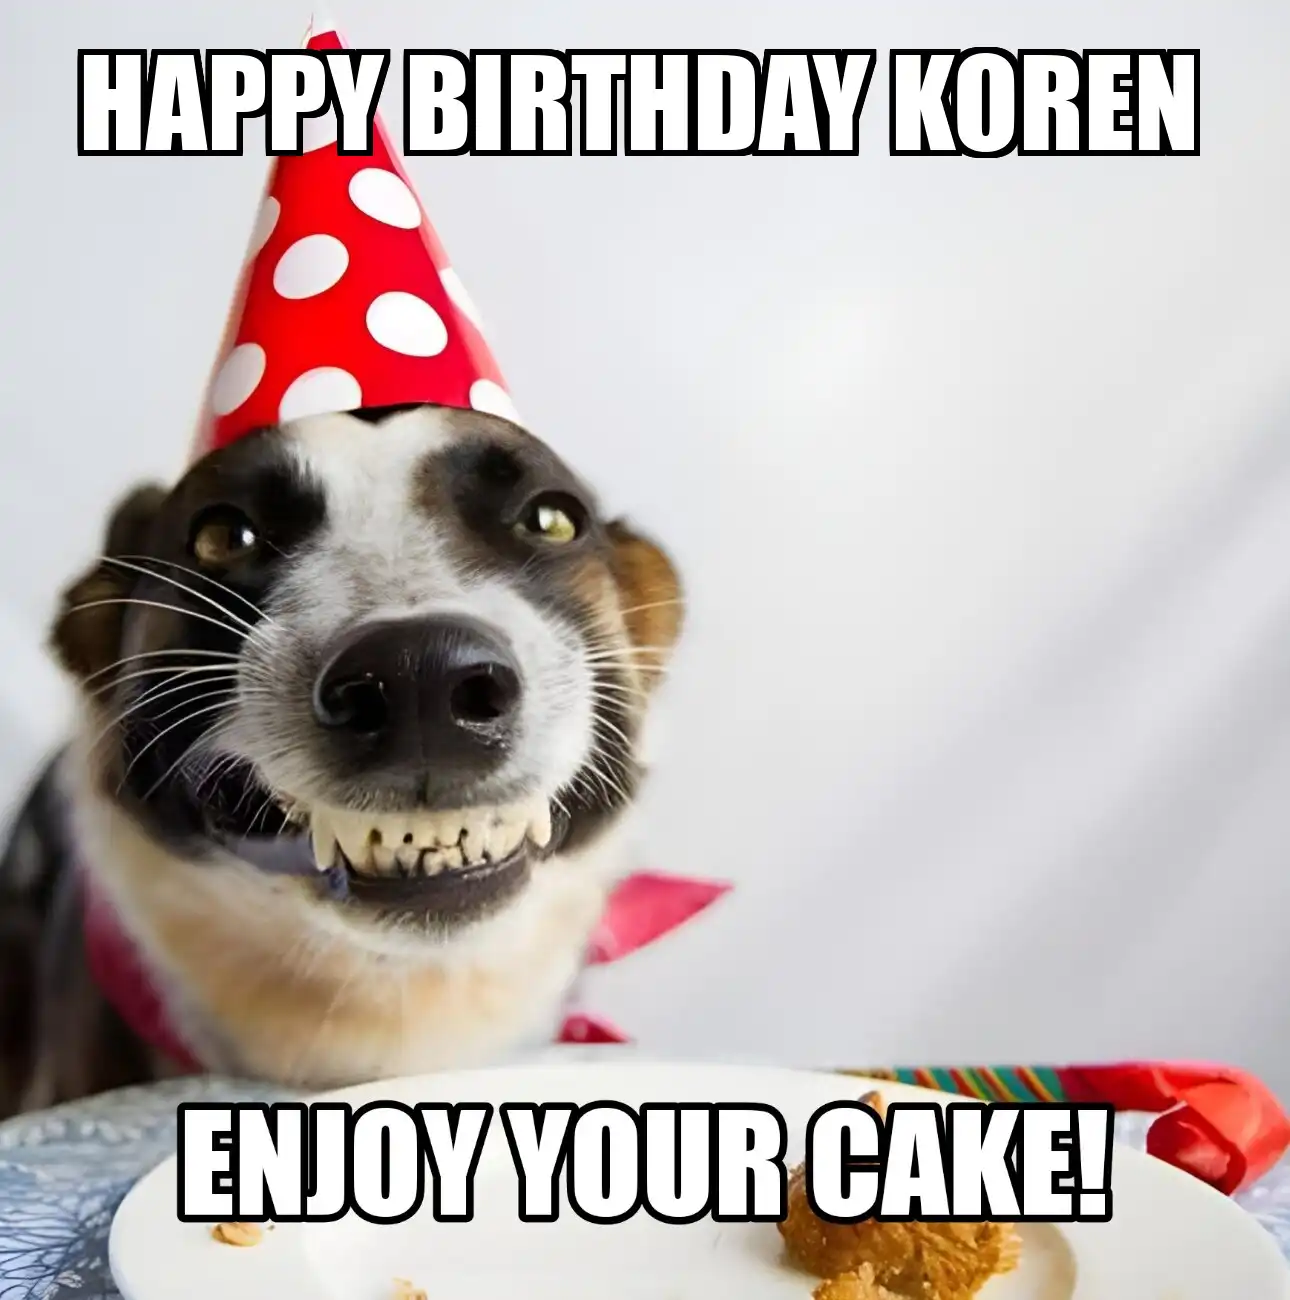 Happy Birthday Koren Enjoy Your Cake Dog Meme